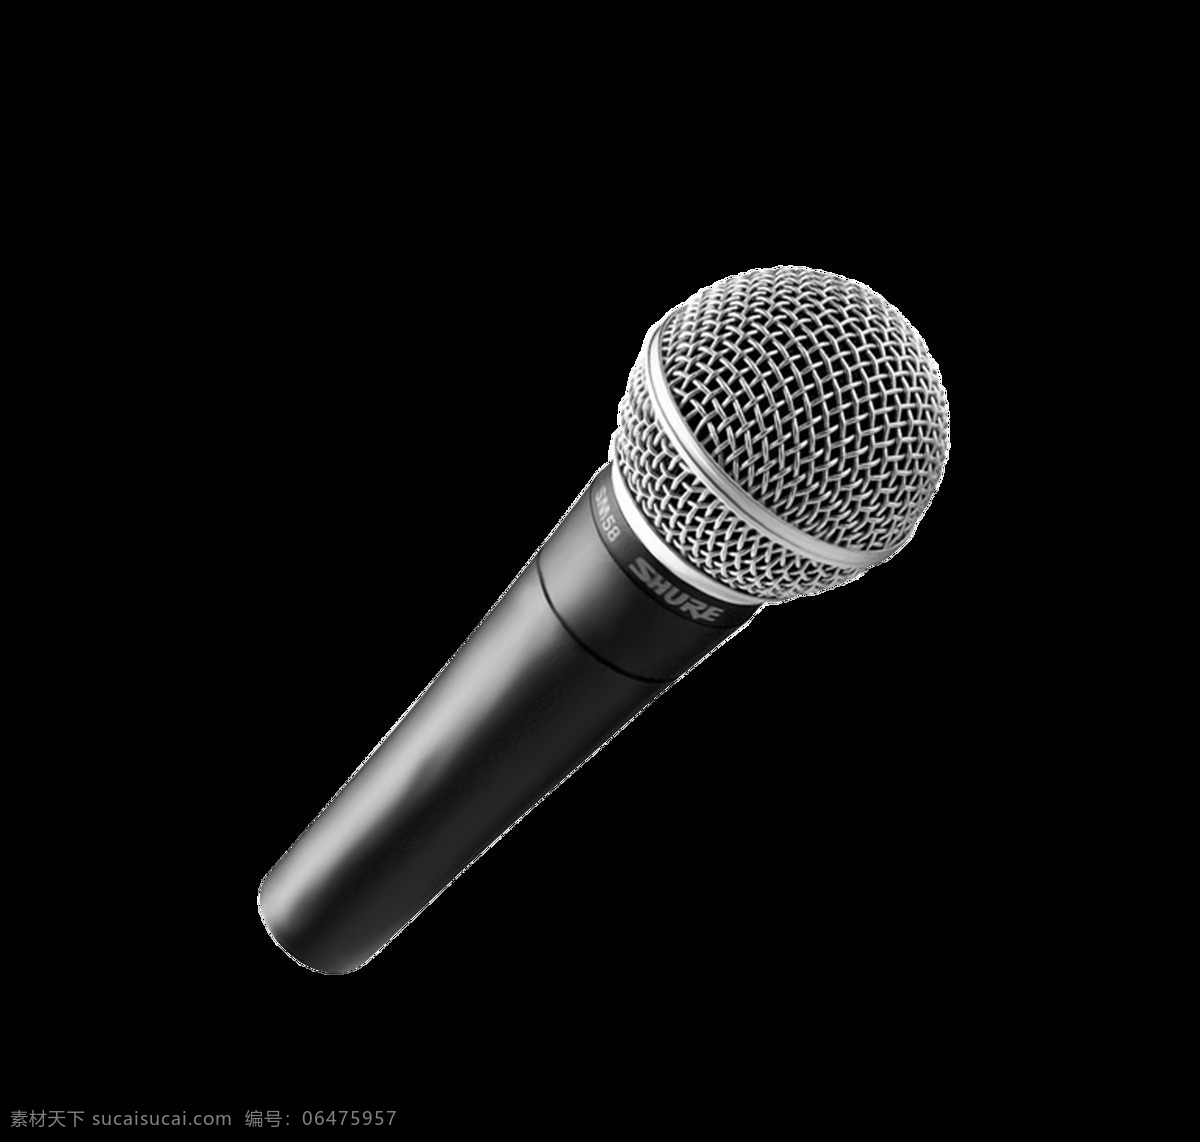 ktv 表演 唱歌 歌唱 话筒 卡拉ok 麦克风 器材 话筒设计素材 话筒模板下载 microphone 音响设备 舞蹈音乐 文化艺术